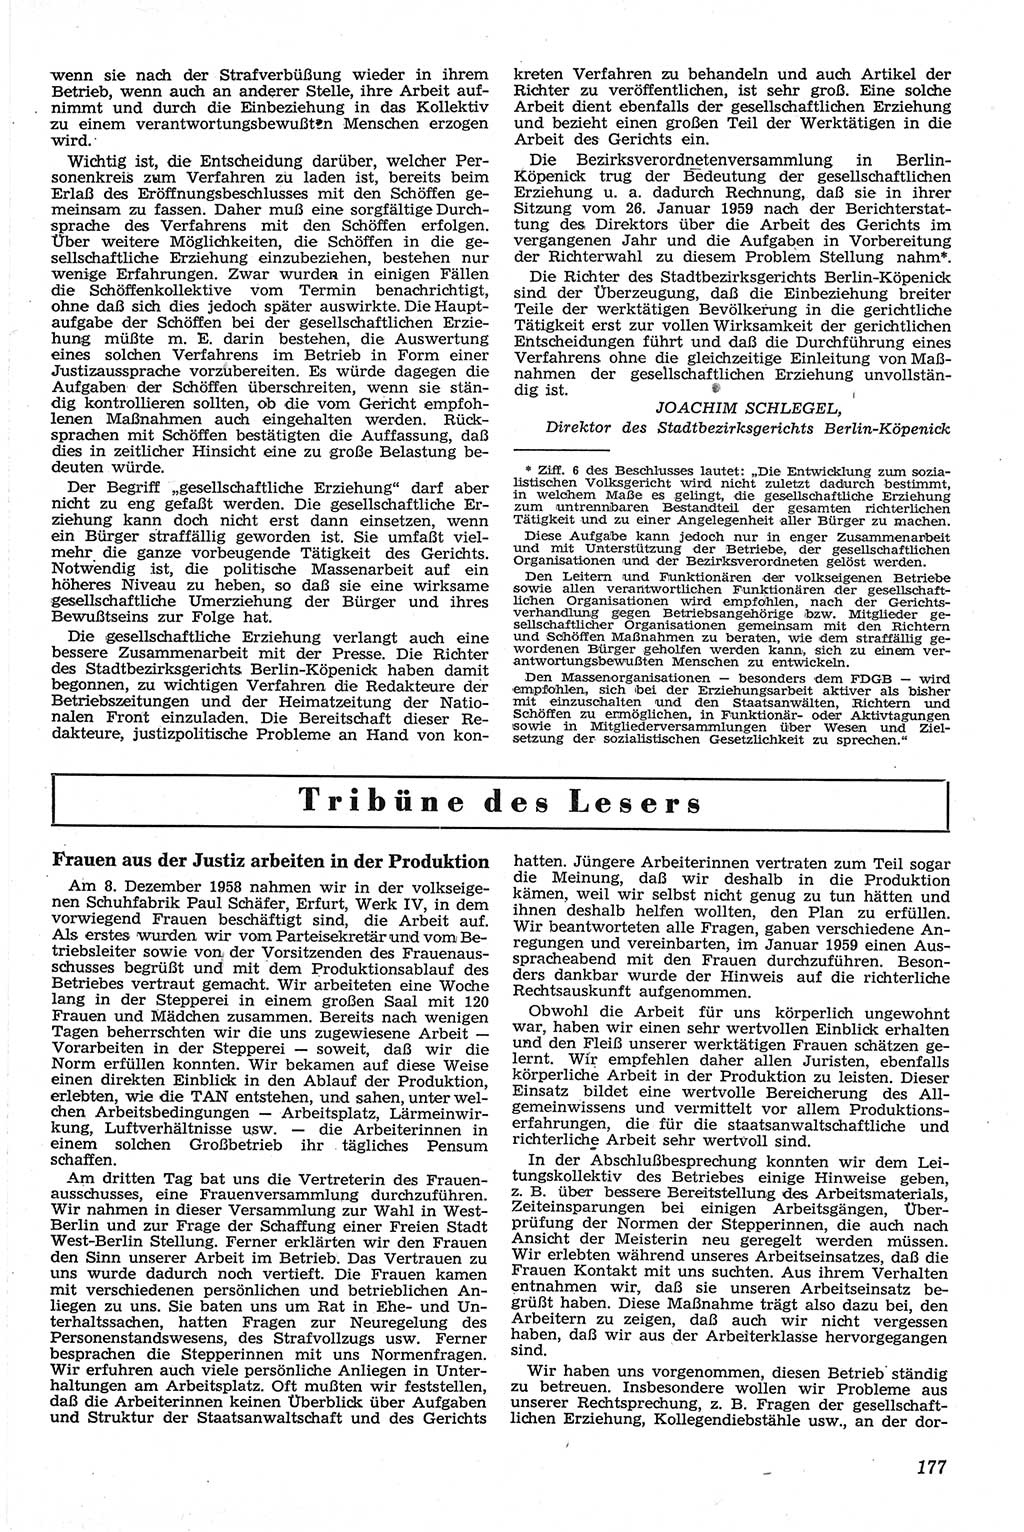 Neue Justiz (NJ), Zeitschrift für Recht und Rechtswissenschaft [Deutsche Demokratische Republik (DDR)], 13. Jahrgang 1959, Seite 177 (NJ DDR 1959, S. 177)